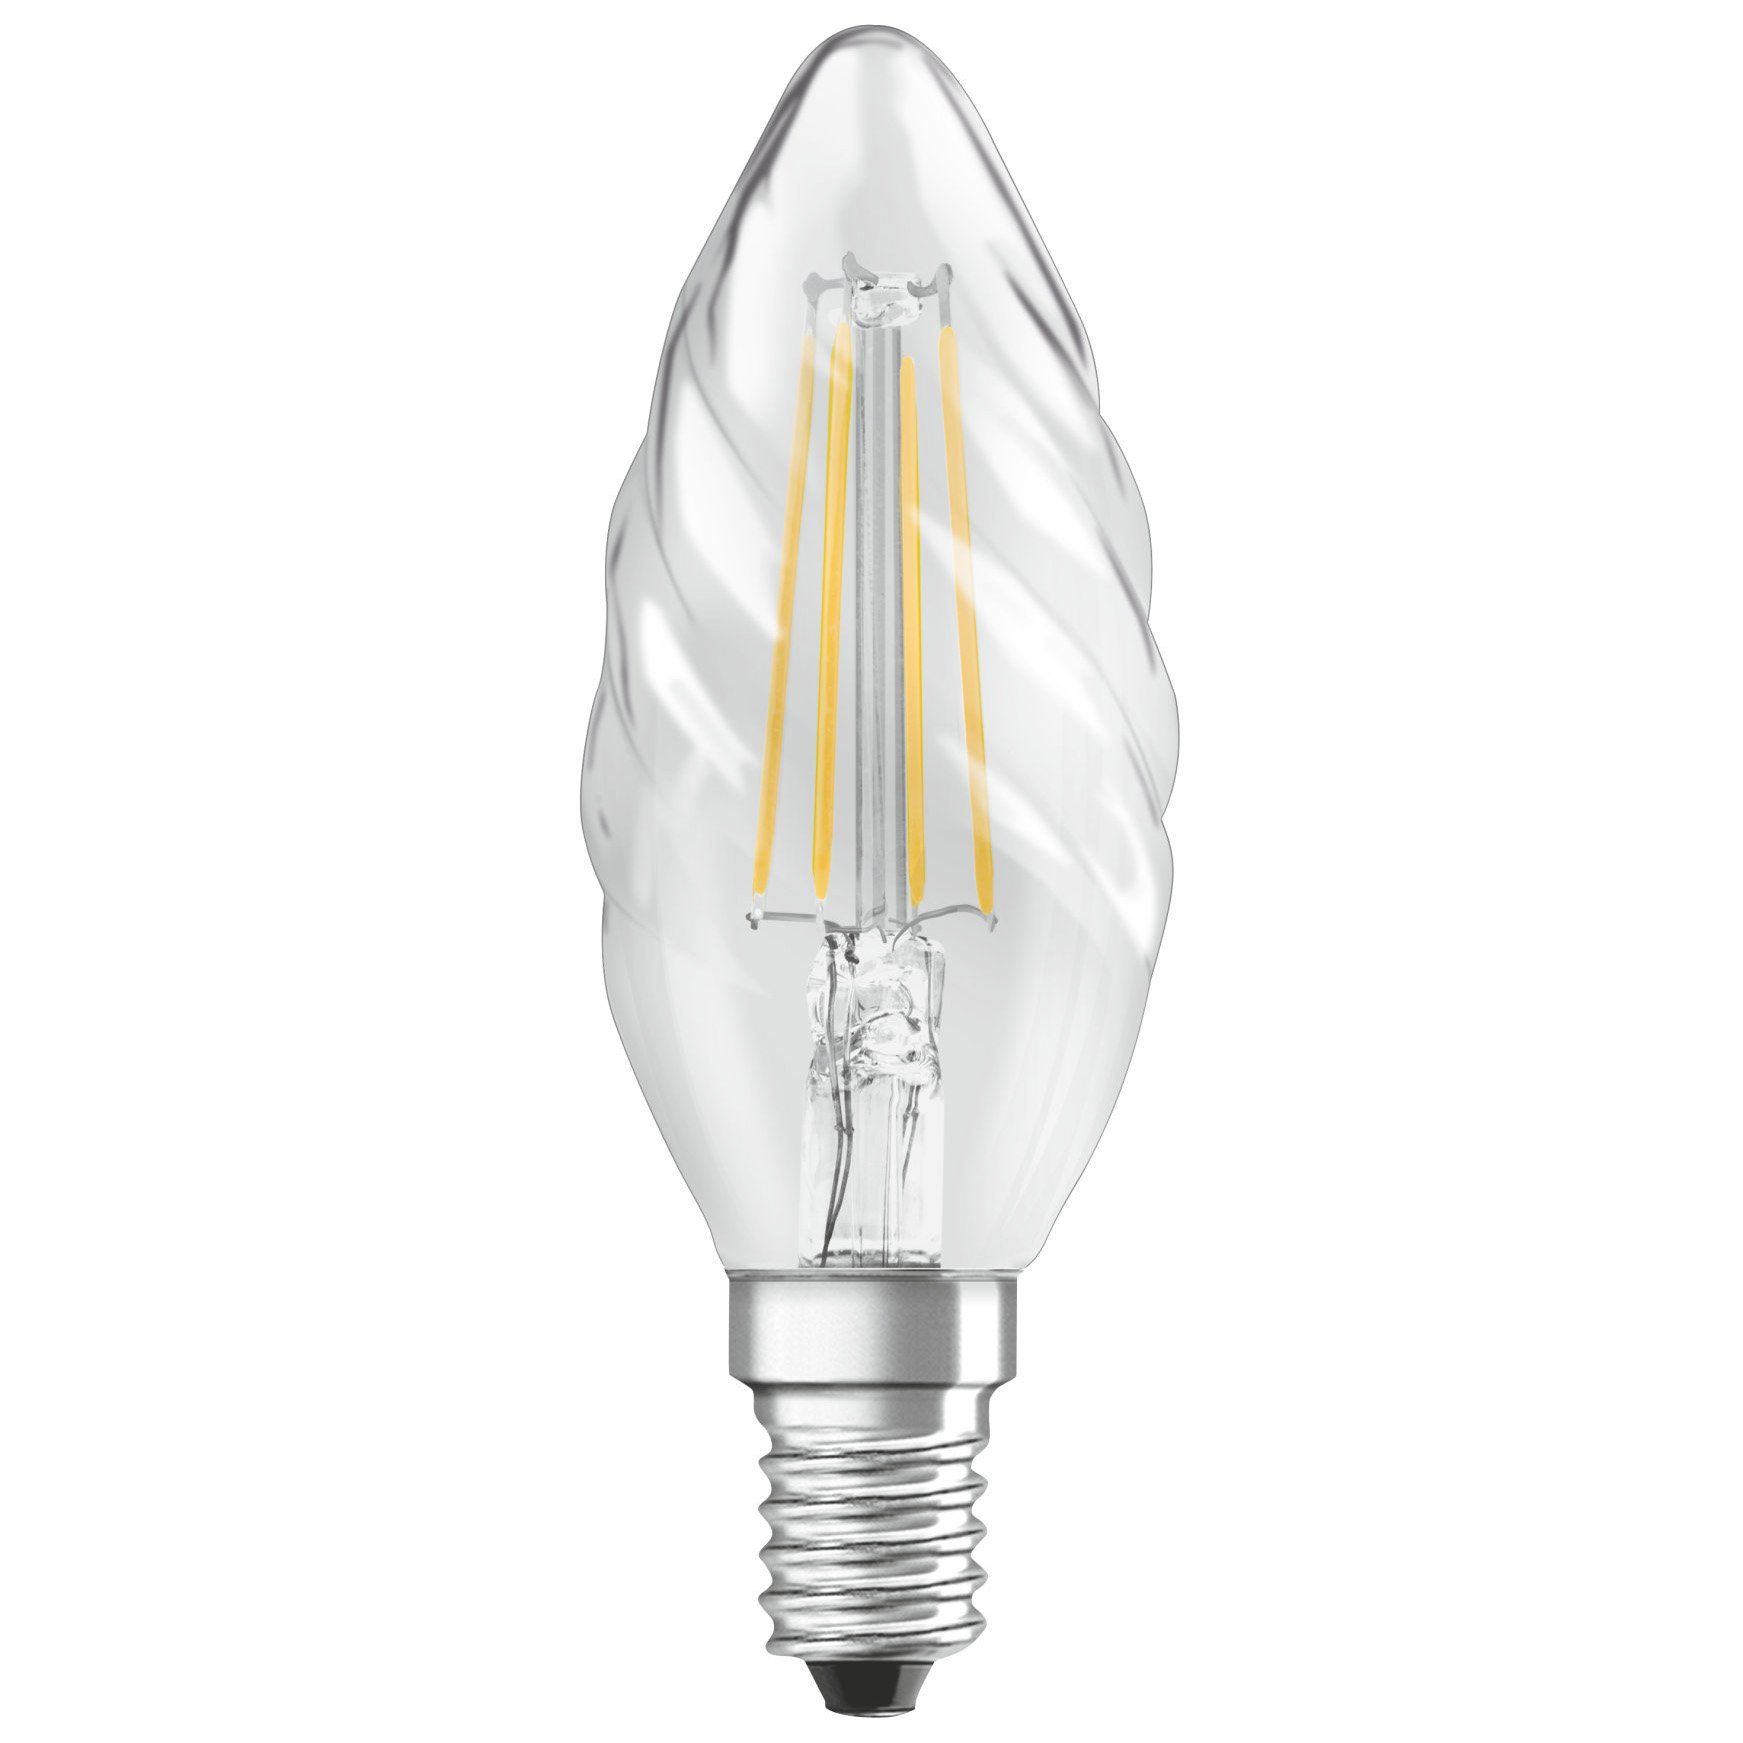 Ampoule LED E14 FILAMENT CLEAR éclairage blanc chaud 4W 470 lumens Ø3.5cm -  Keria et Laurie Lumière